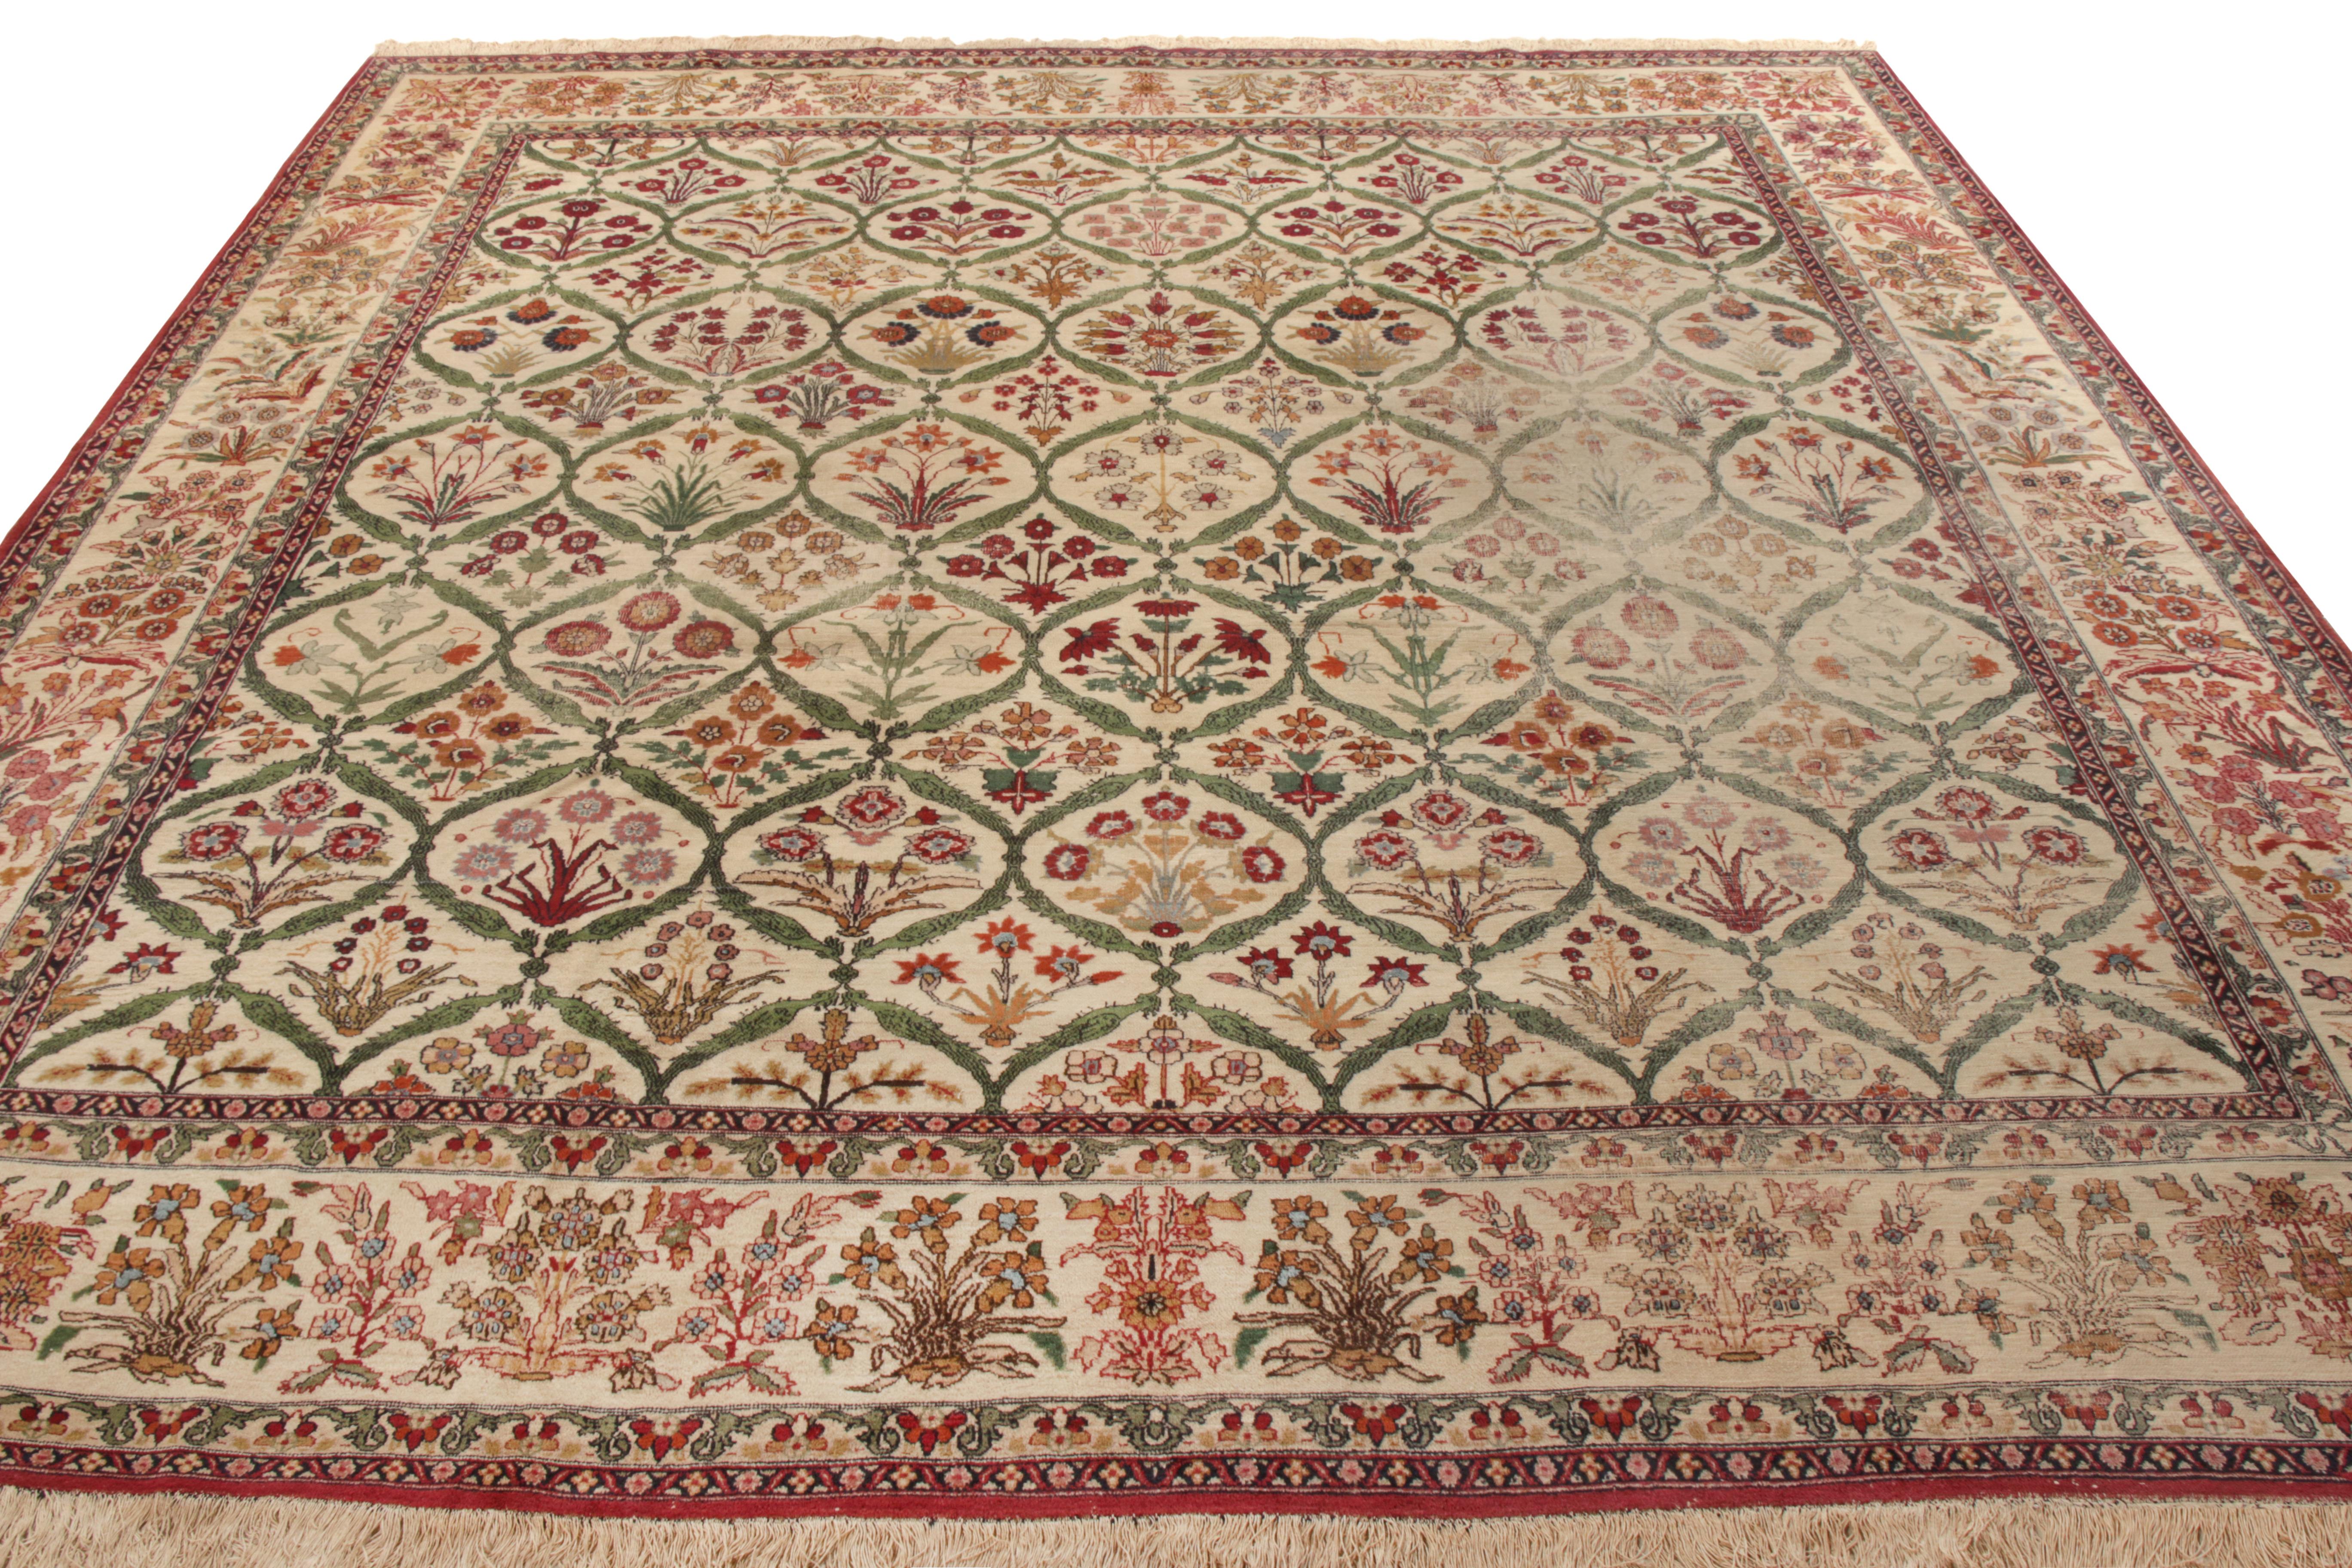 Noué à la main en laine en provenance d'Inde vers 1890-1900, cet ancien tapis indien 9x15 de lignée Mogul rejoint les rares tapis de taille carrée de notre collection Antique & Vintage. Le motif s'épanouit dans un séduisant motif floral couvrant